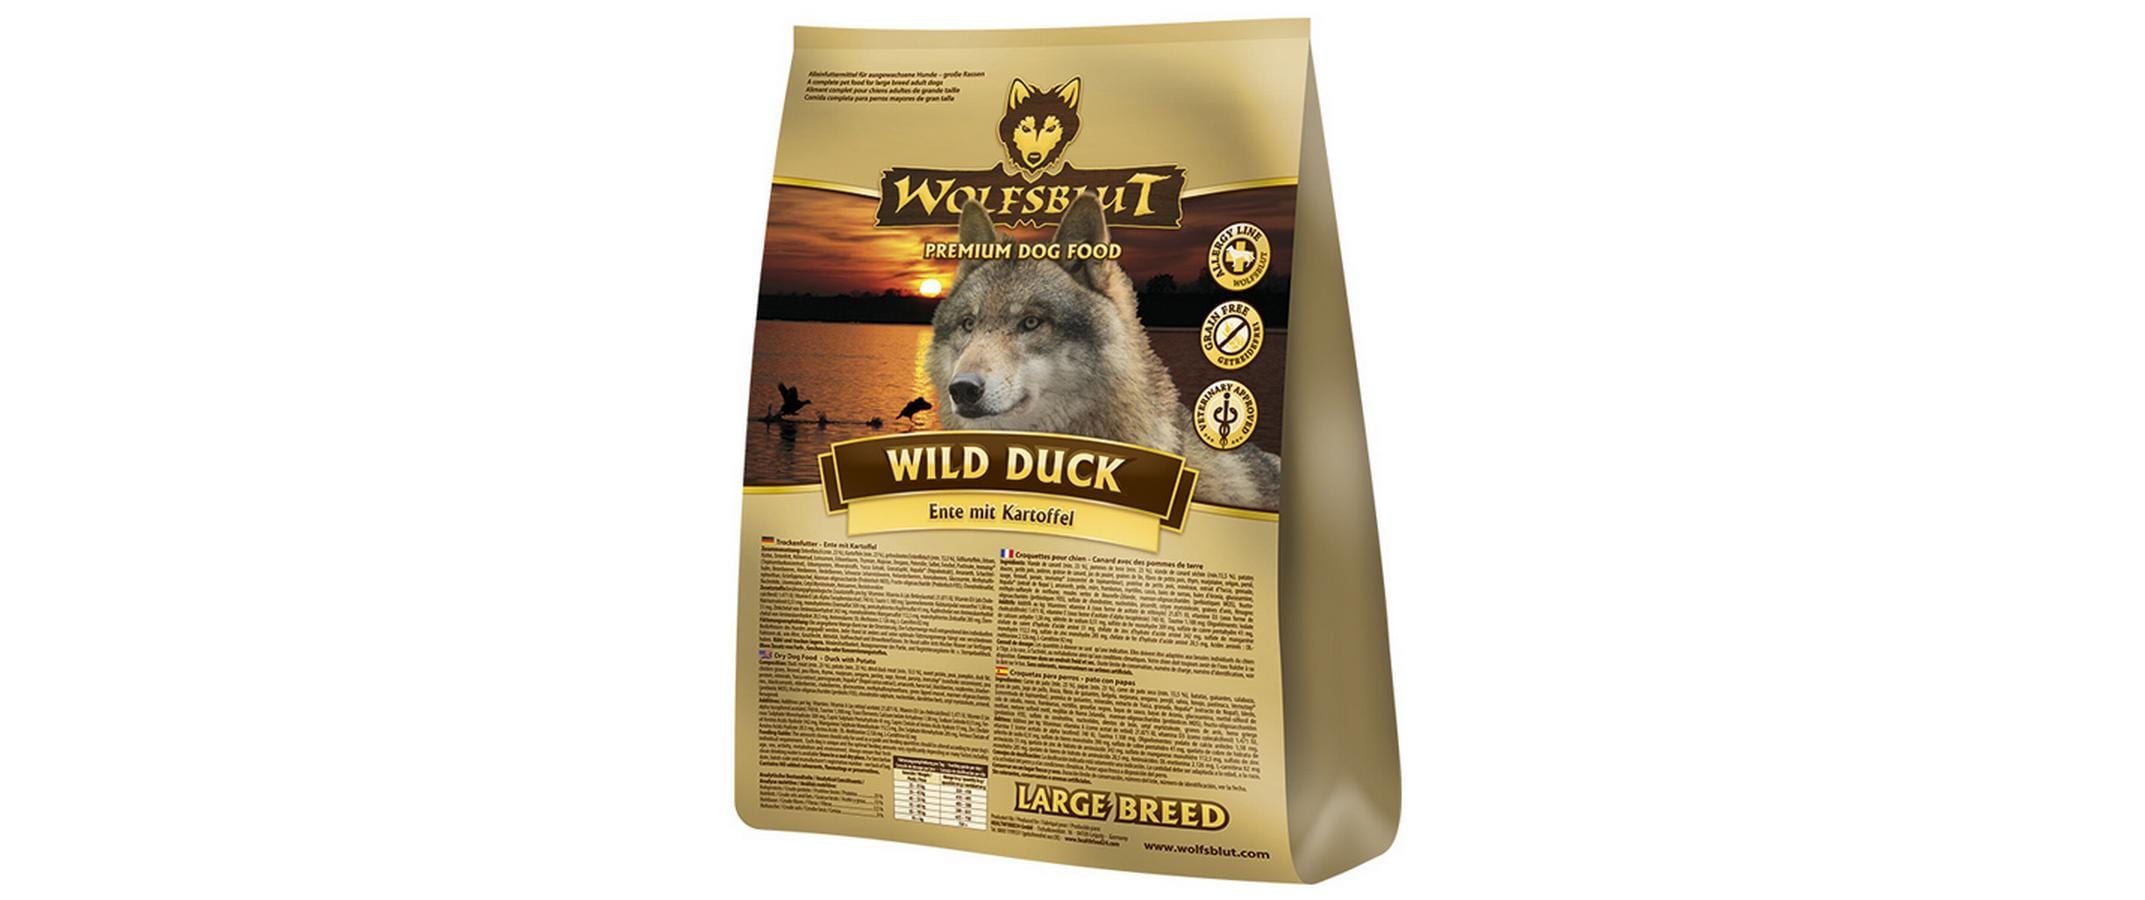 Wolfsblut Trockenfutter Dog Wild Duck Large Breed, 12.5 kg